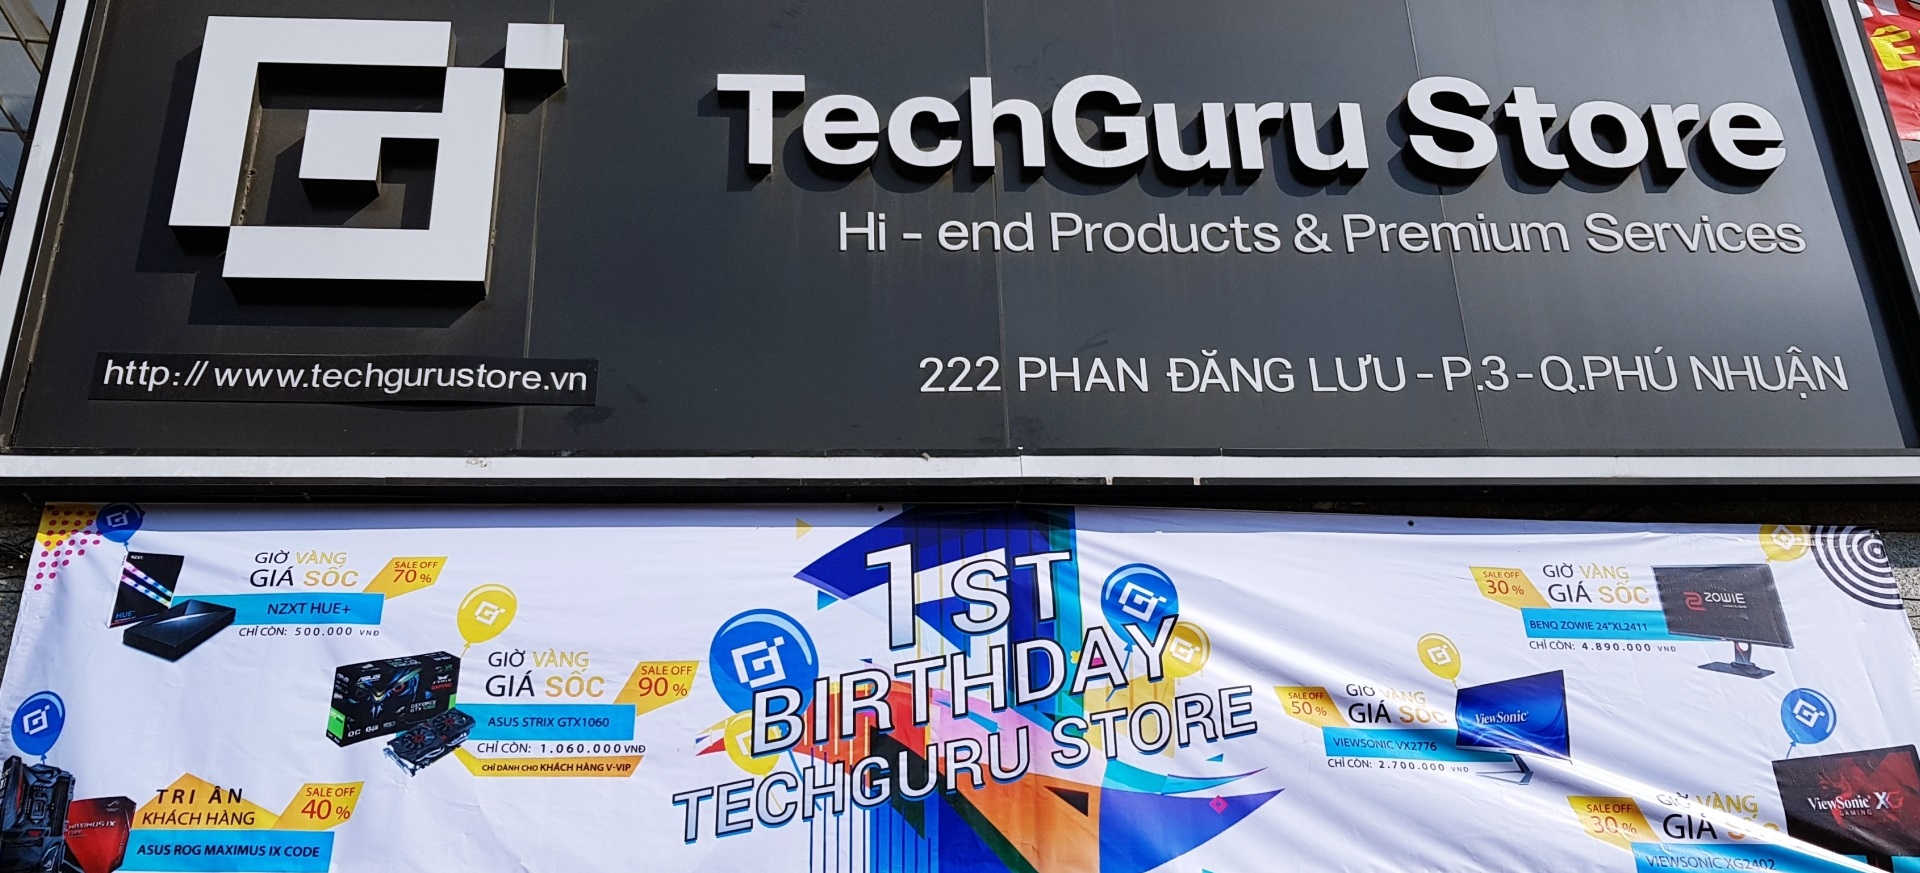 TechGuru Store kỷ niệm một năm thành lập - Tin Gaming Gear